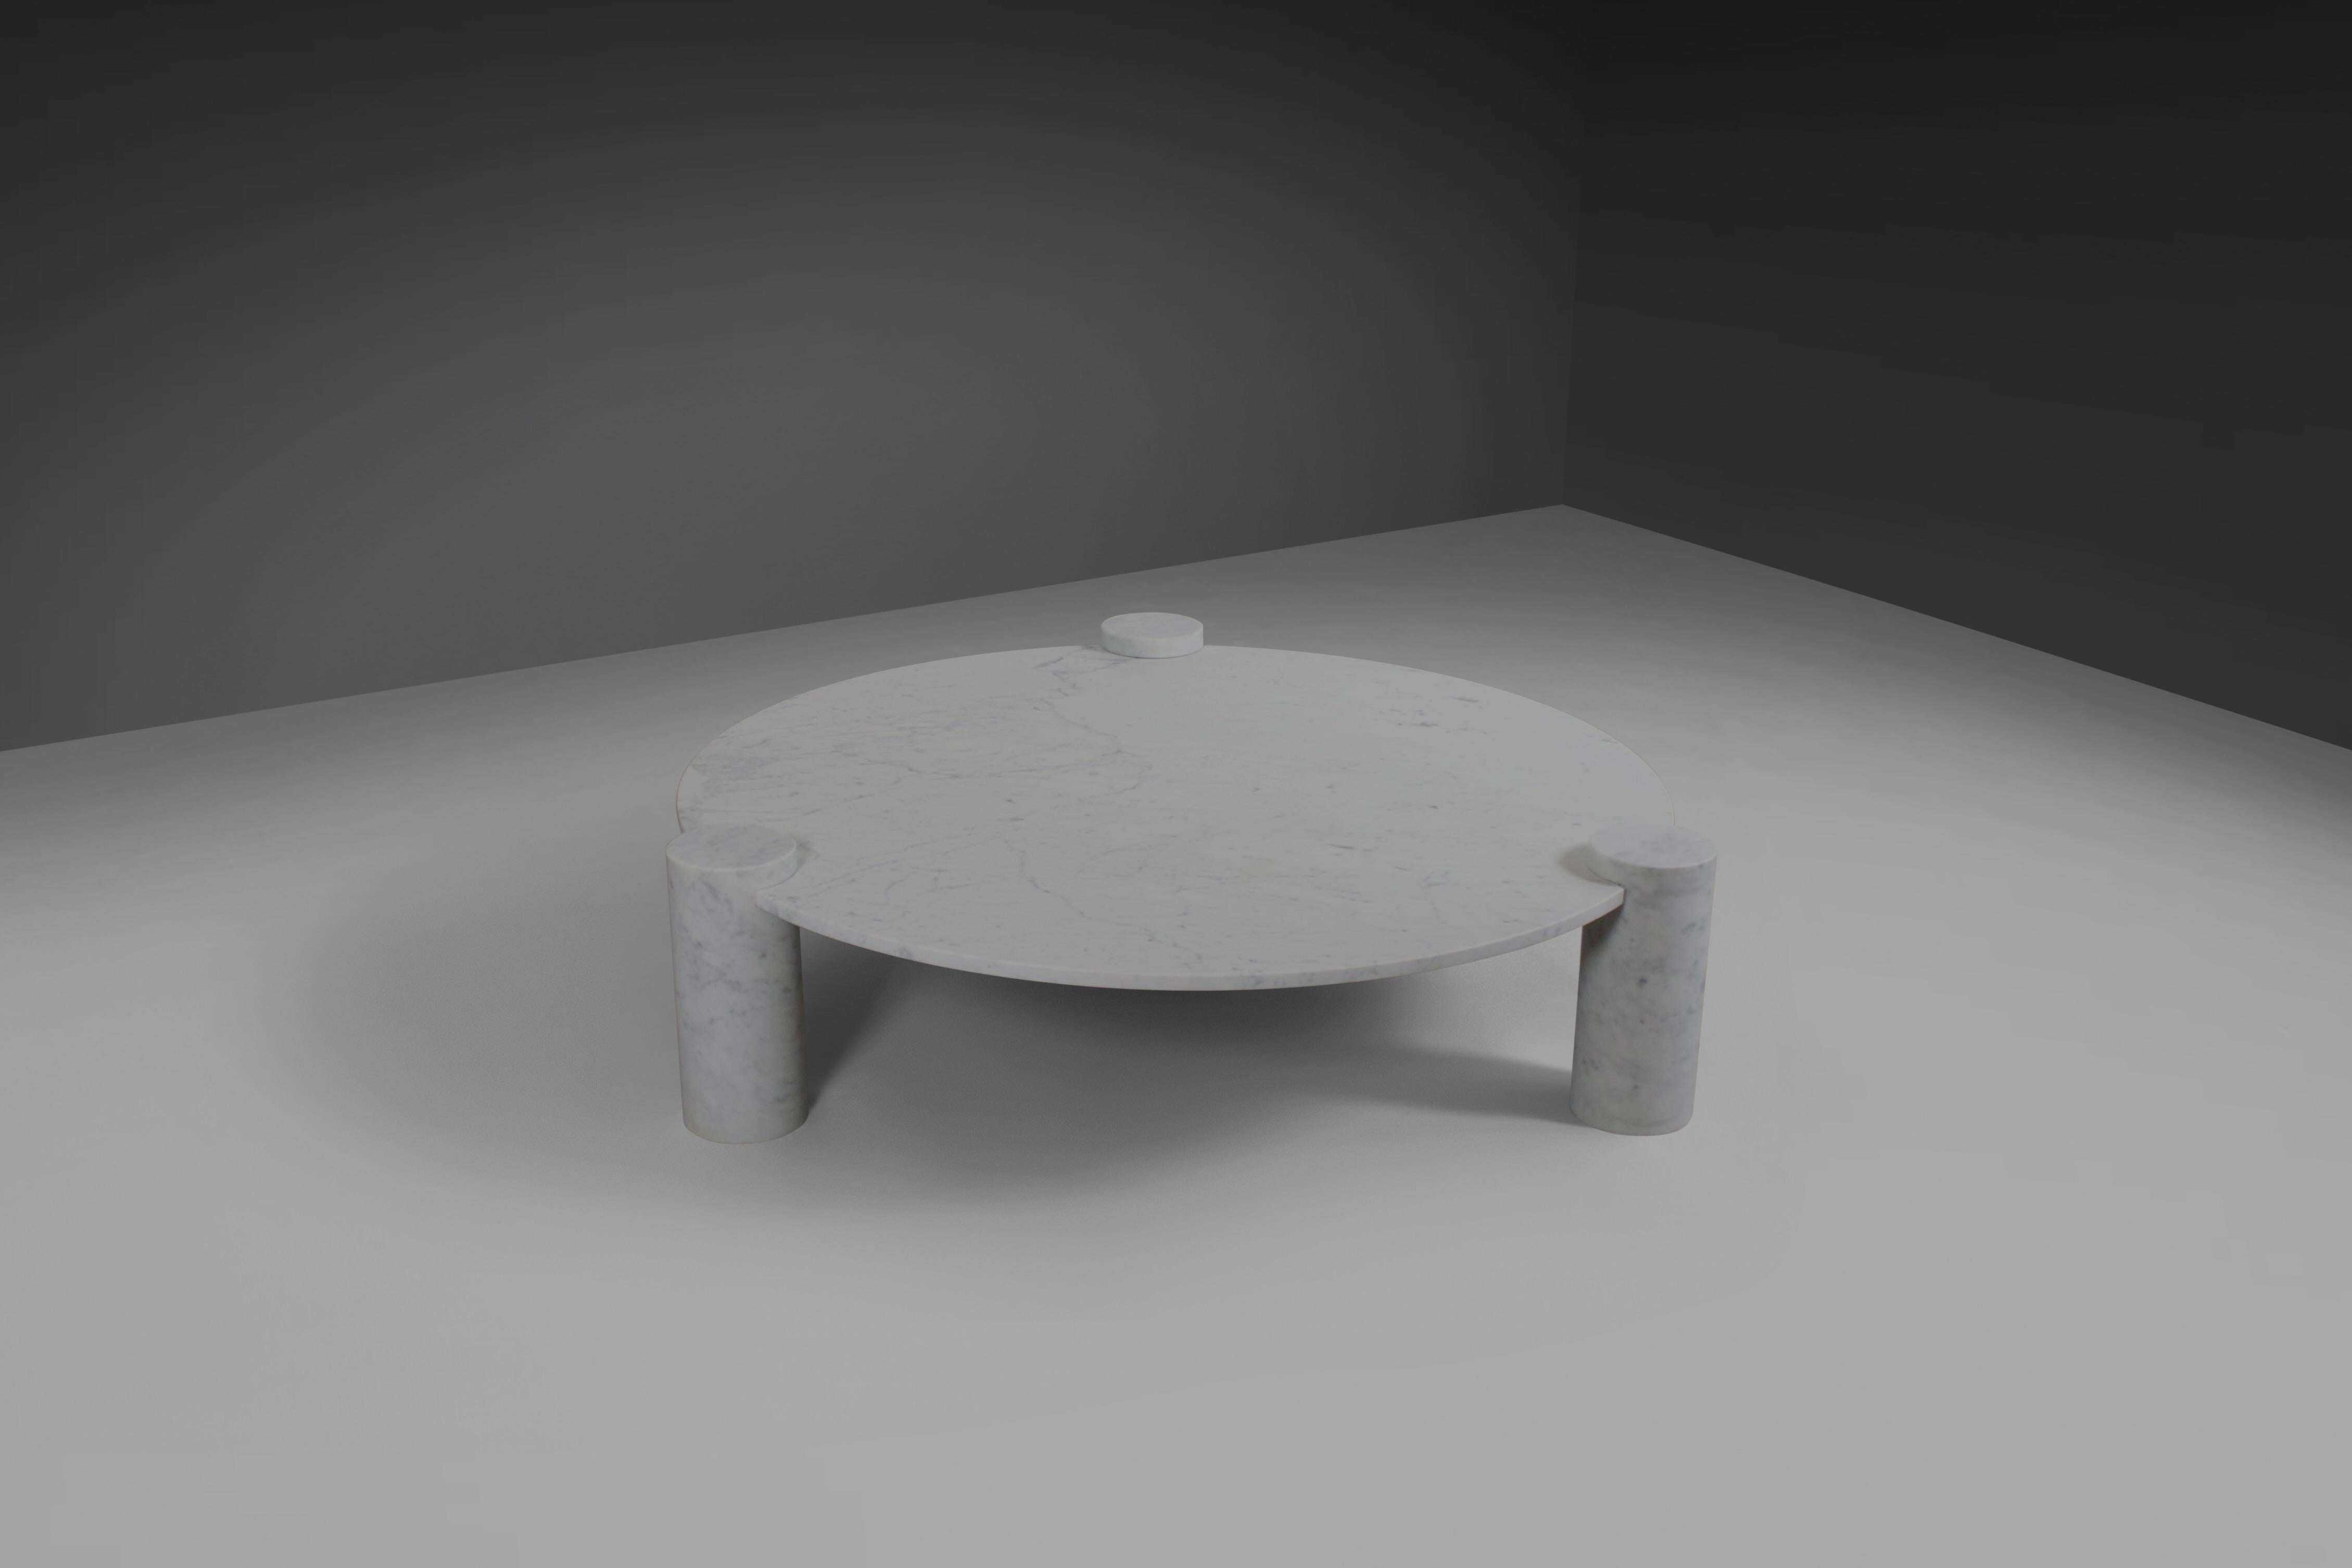 Fantastique table basse ronde en excellent état.

Fabriqué en Italie à la fin des années 1970

Cette table particulière se compose d'un plateau en marbre de carrare blanc et de bases rondes en marbre de carrare.

Les trois bases rondes en marbre